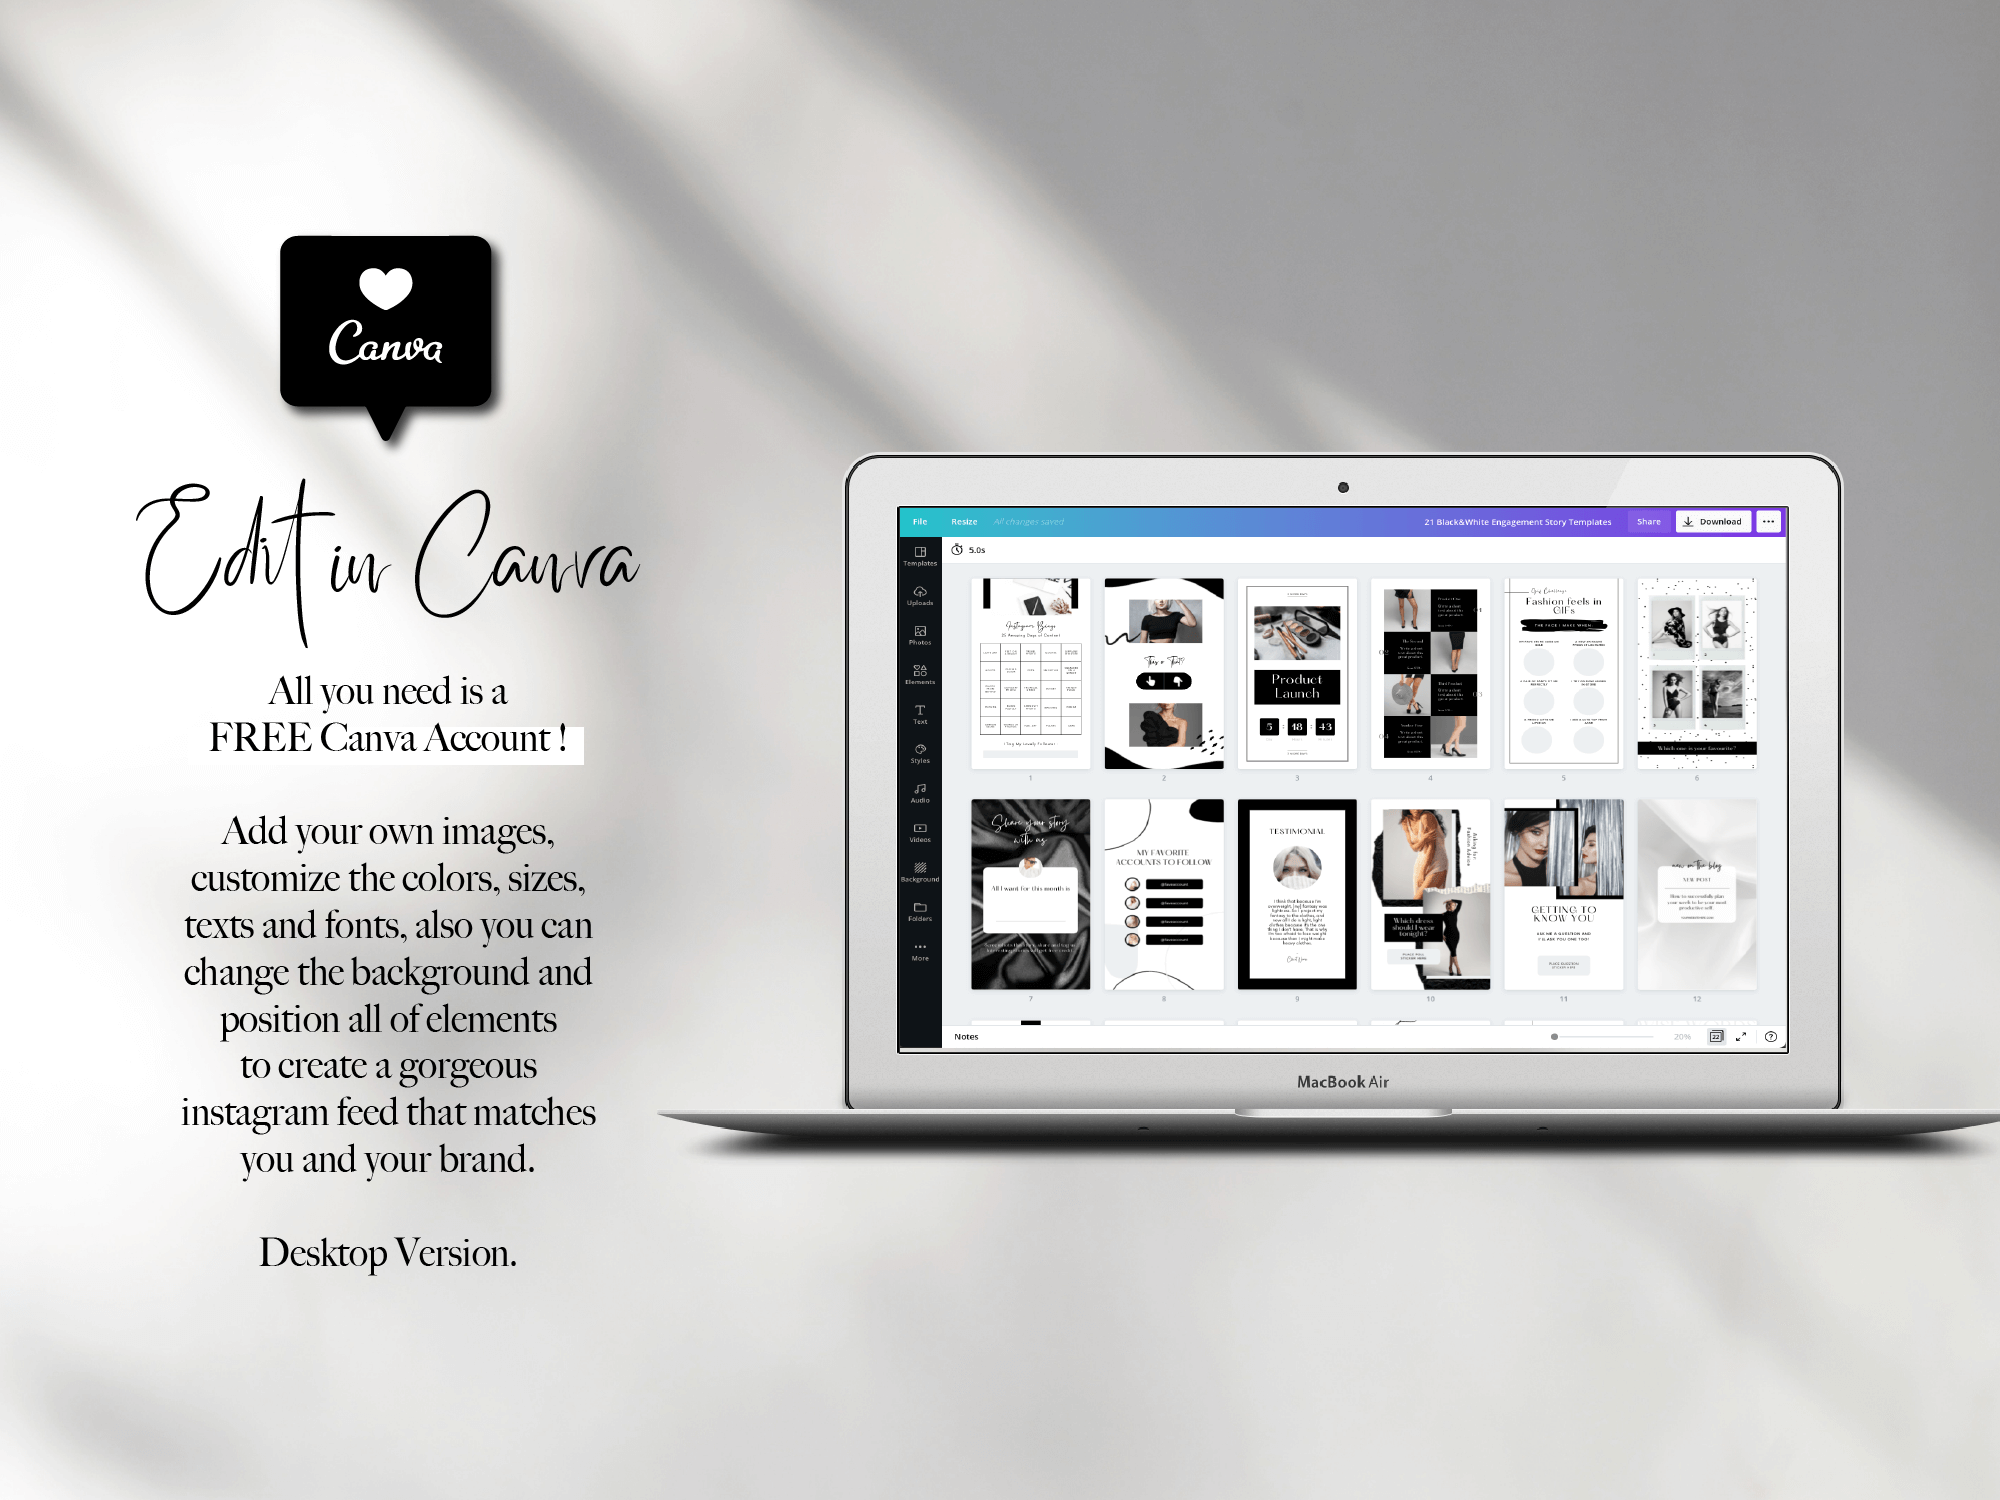 Black & White Instagram Story Template mang đến cho bạn cách làm mới trang cá nhân của mình. Với các giao diện thân thiện với người dùng và đẹp mắt, bạn có thể kể câu chuyện của mình một cách độc đáo. Hãy cùng xem hình ảnh liên quan để tìm gợi ý, nhé!